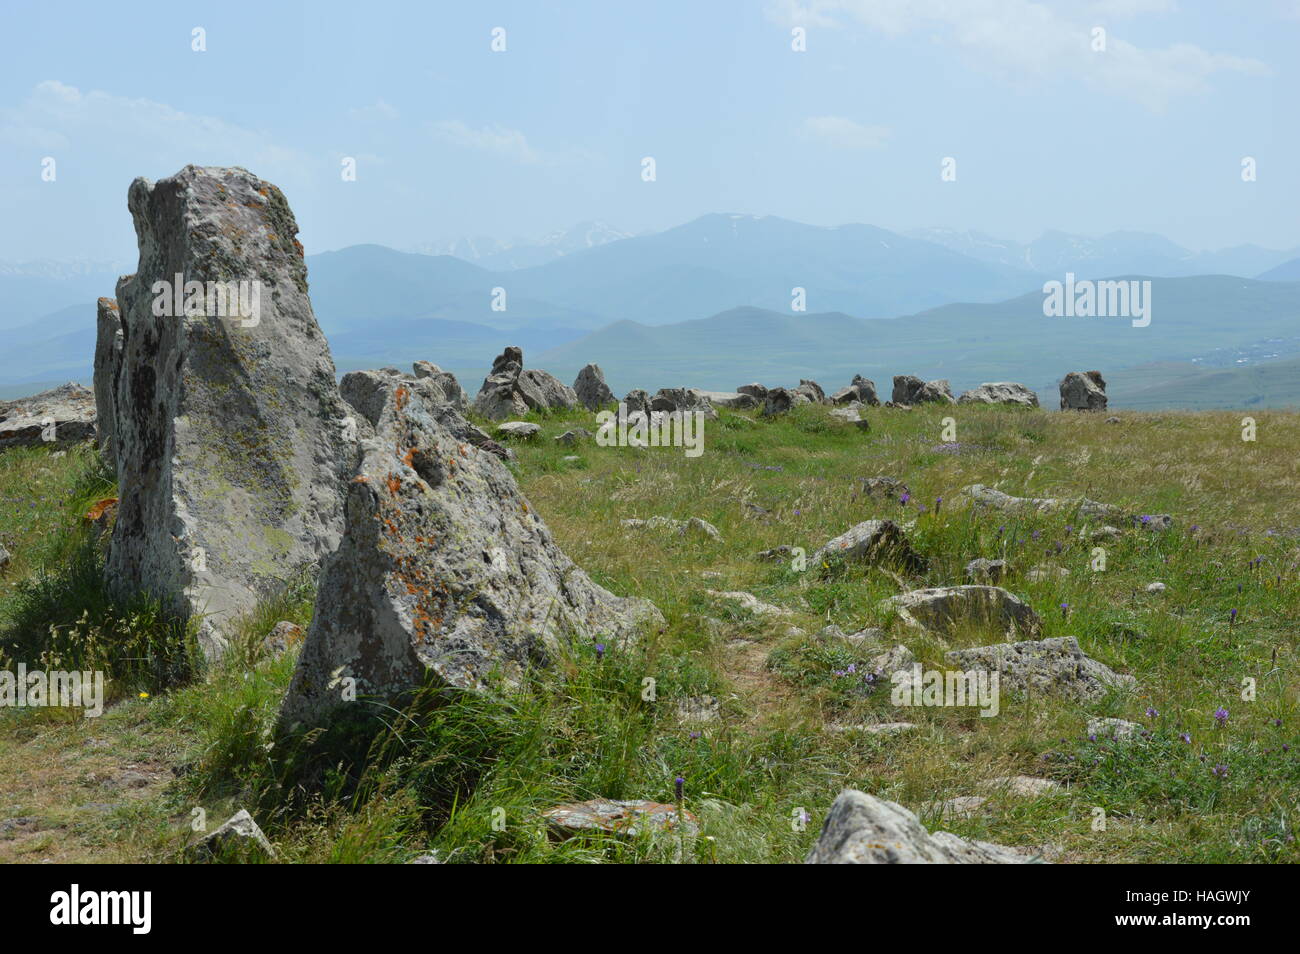 Zorats Karer Karahunj o es un sitio arqueológico prehistórico, cerca de la ciudad de Sisan en Armenia. Foto de stock